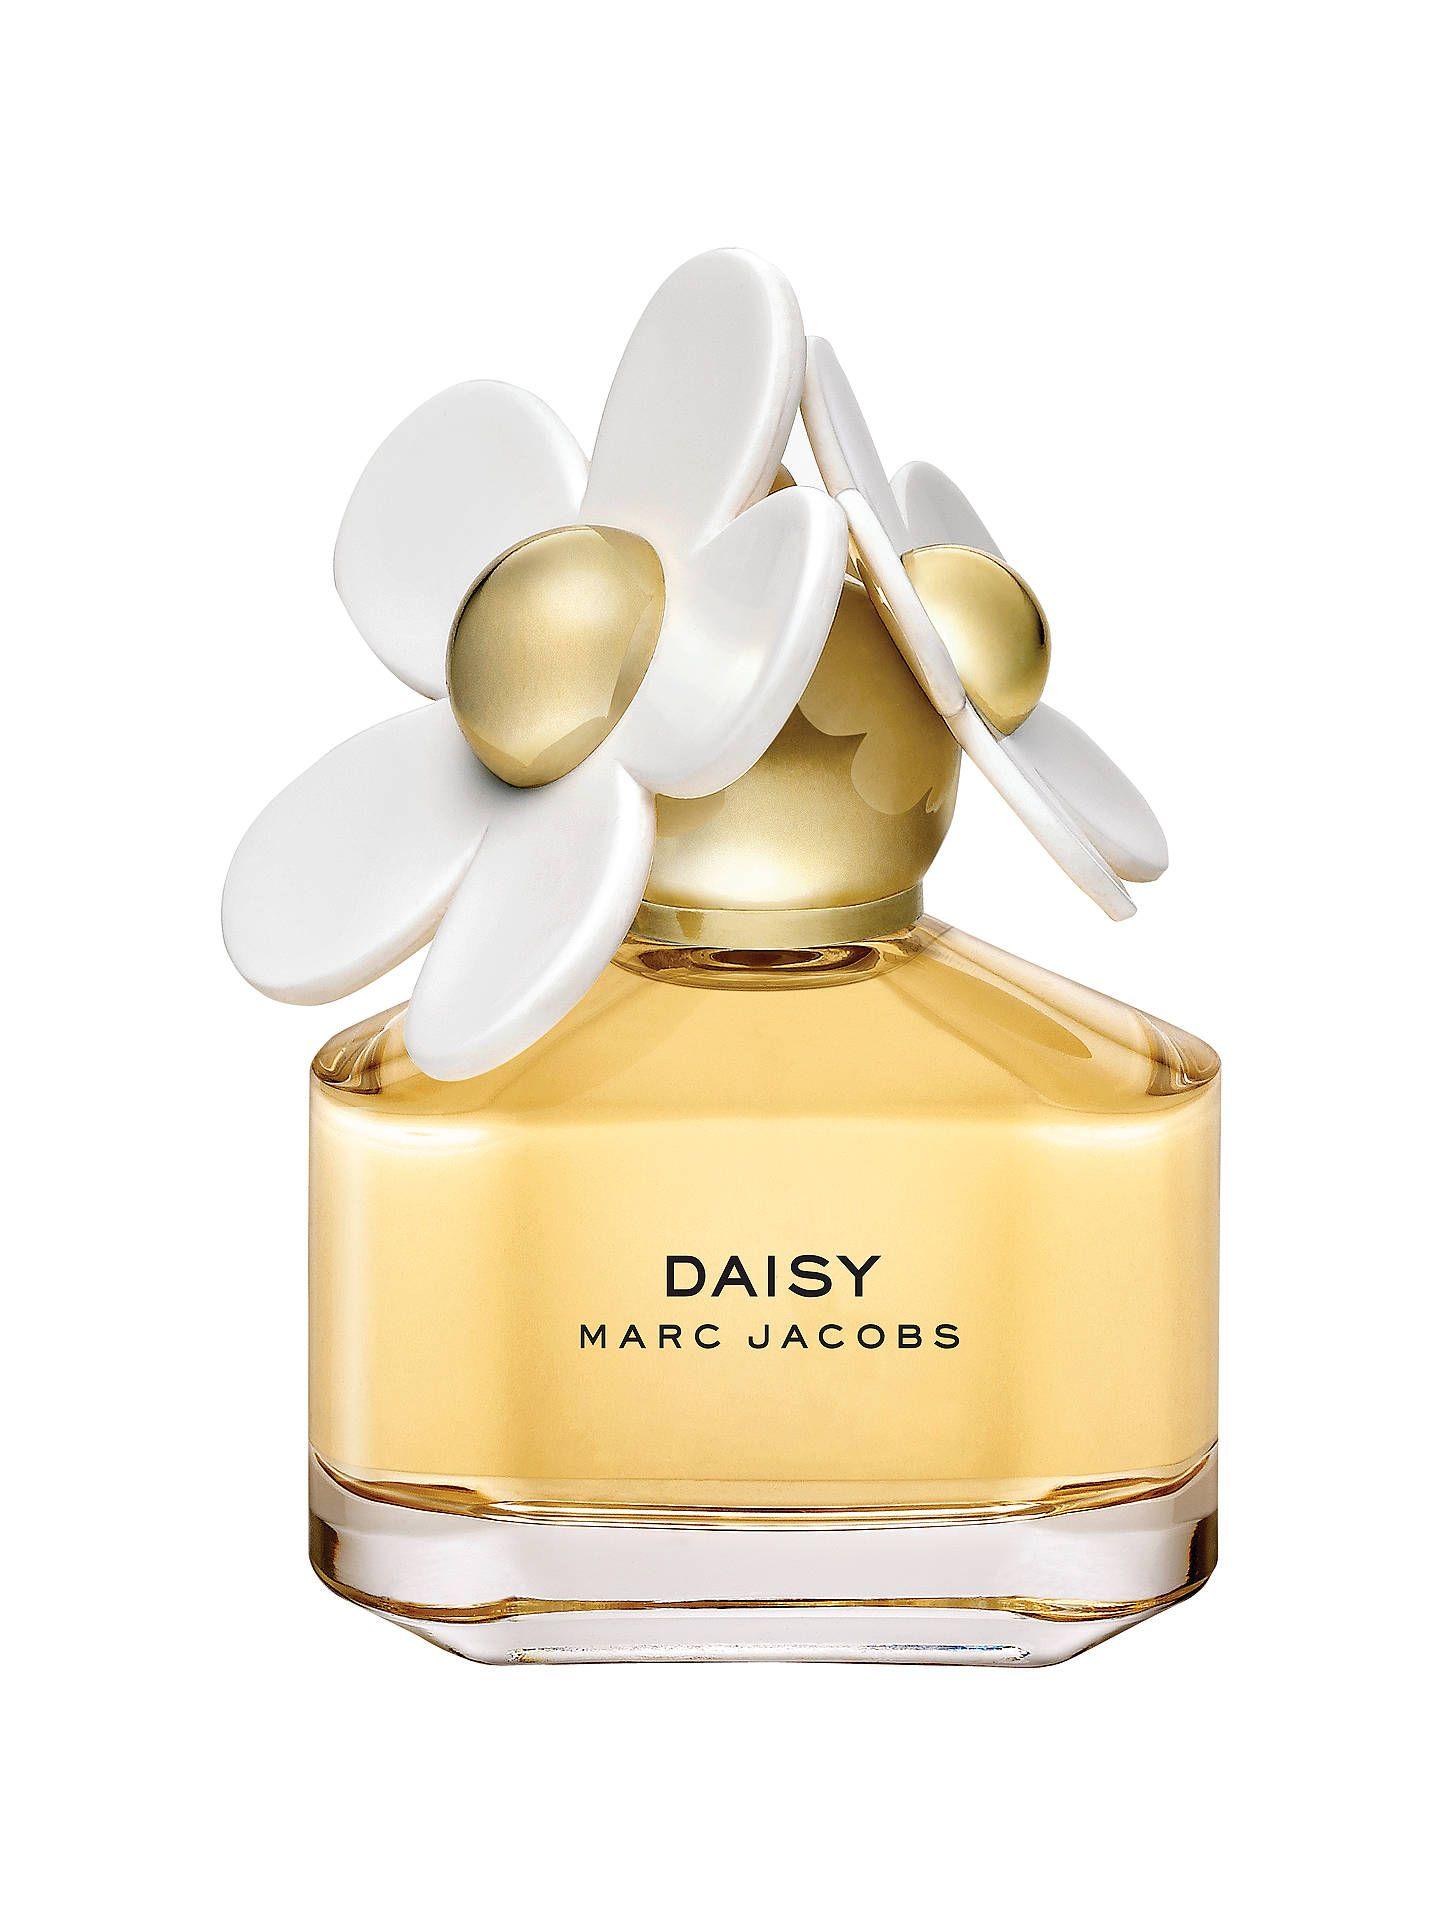 Daisy Marc Jacobs Logo - Marc Jacobs Daisy Eau de Toilette at John Lewis & Partners